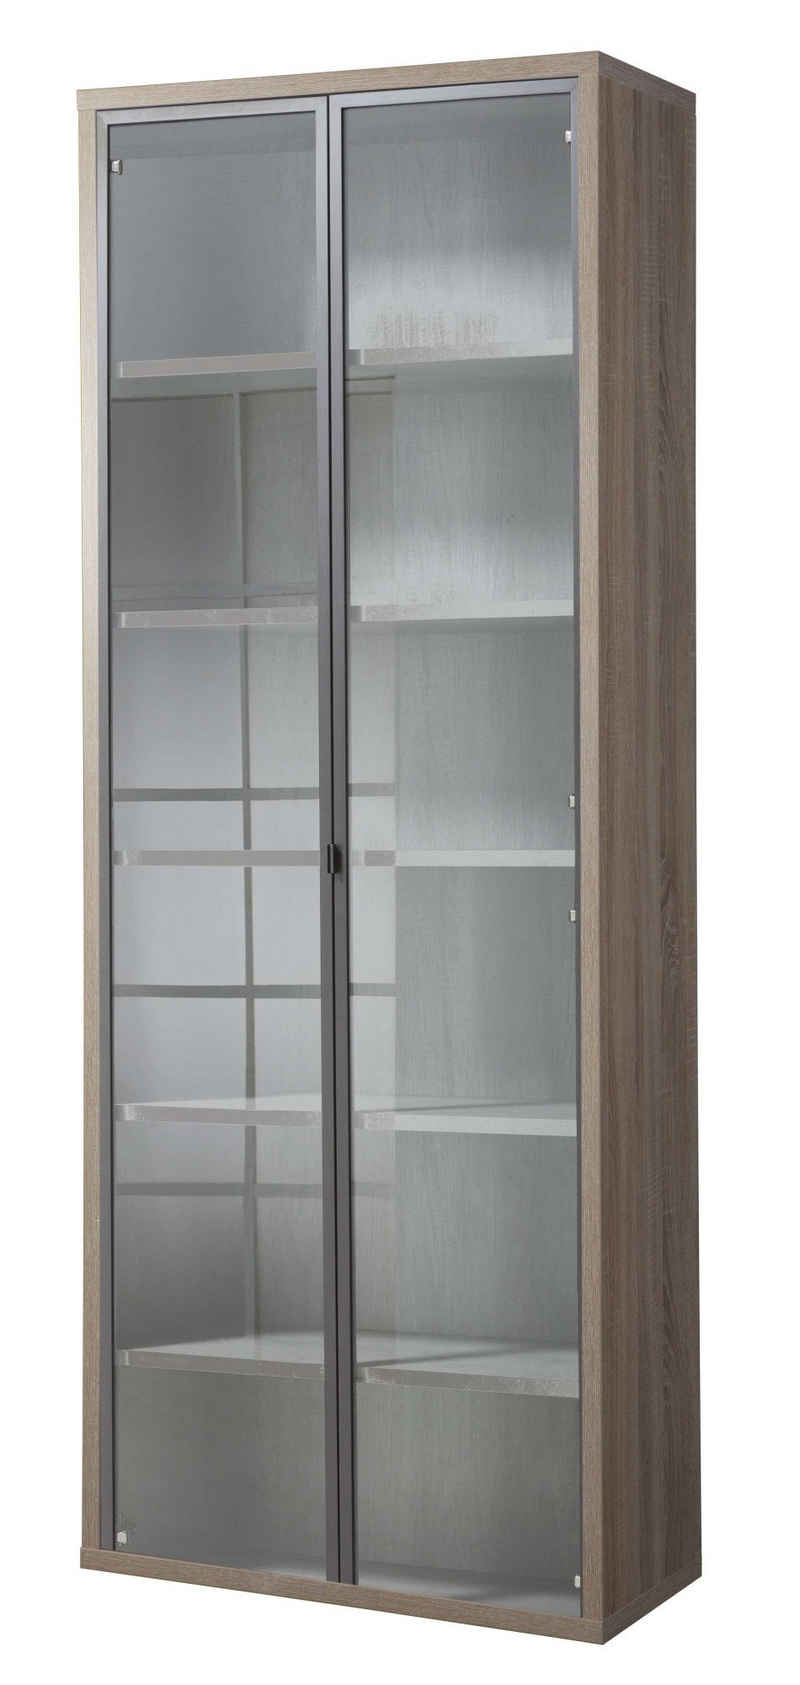 Composad Aktenschrank DISEGNO, Bücherregal mit 2 Glastüren, verstellbare Böden, Höhe 217 cm, 100% recyceltes Holz, Made in Italy